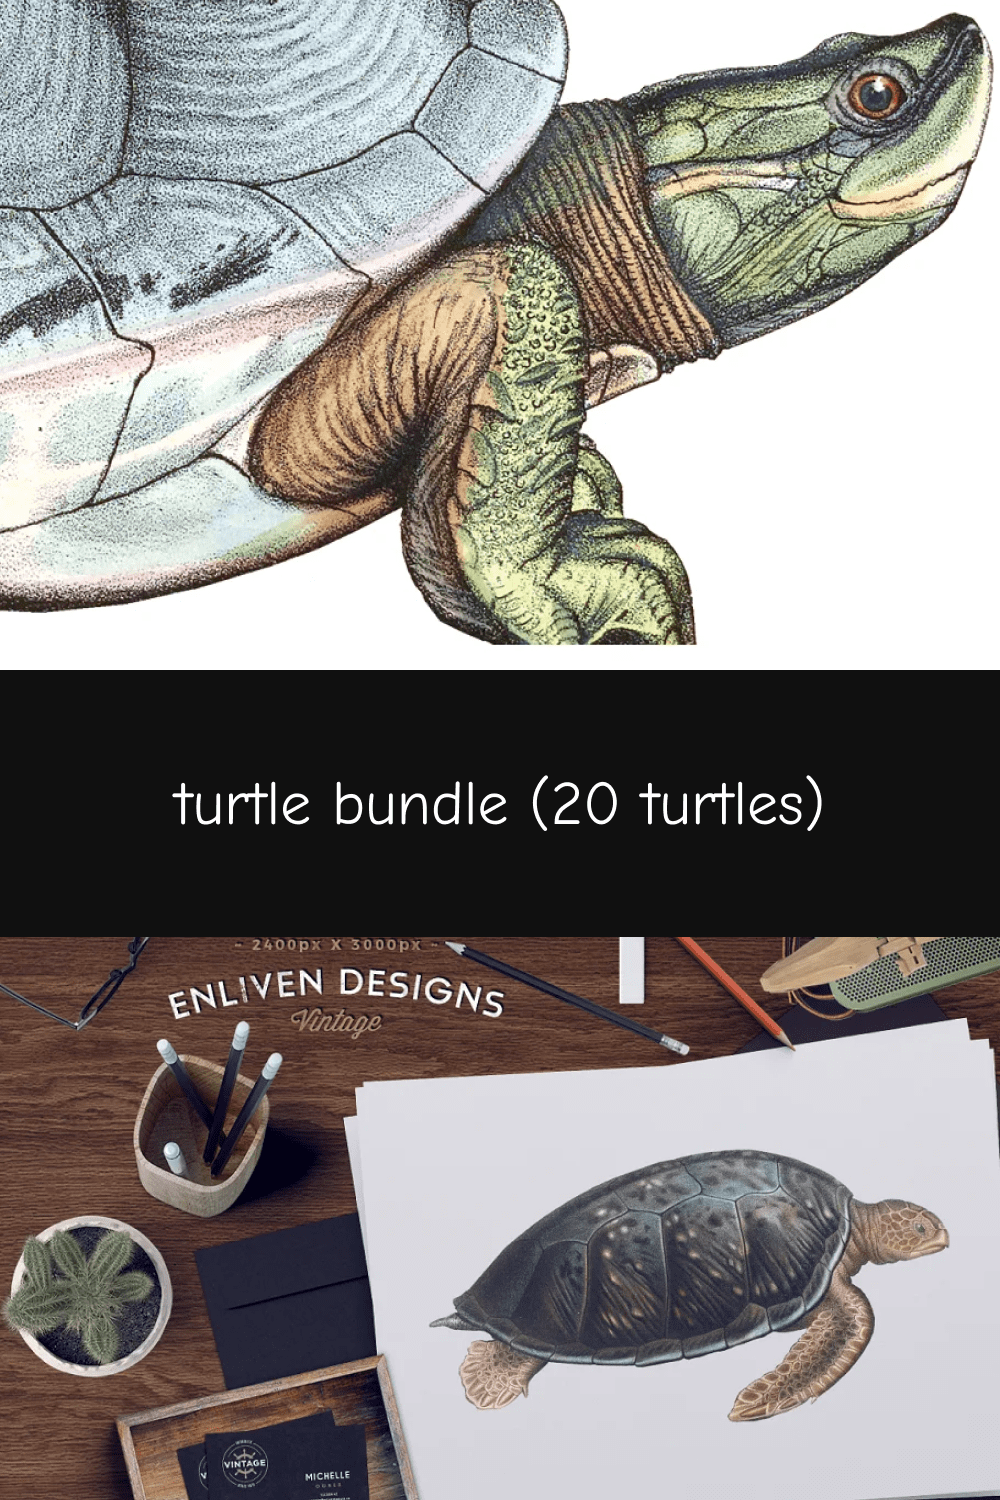 03 turtle bundle 20 turtles pinterest